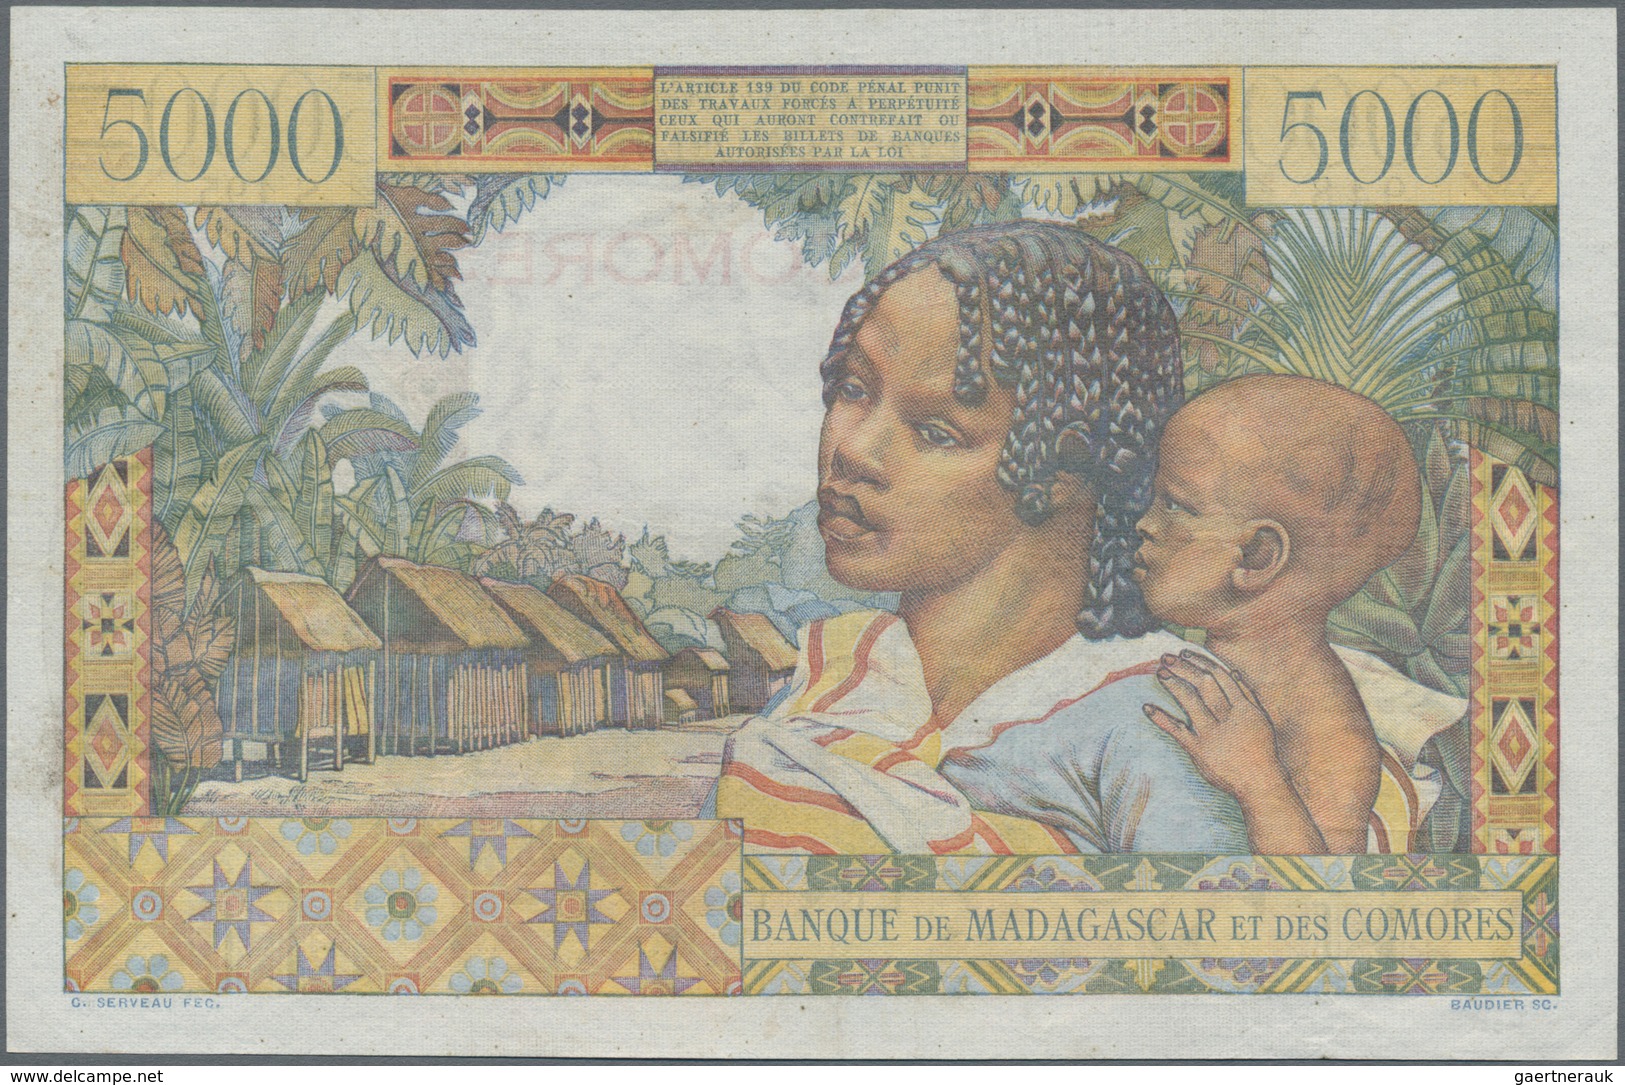 Comoros / Komoren: Banque De Madagascar Et Des Comores 5000 Francs ND(1960-63), P.6c, Very Popular A - Komoren